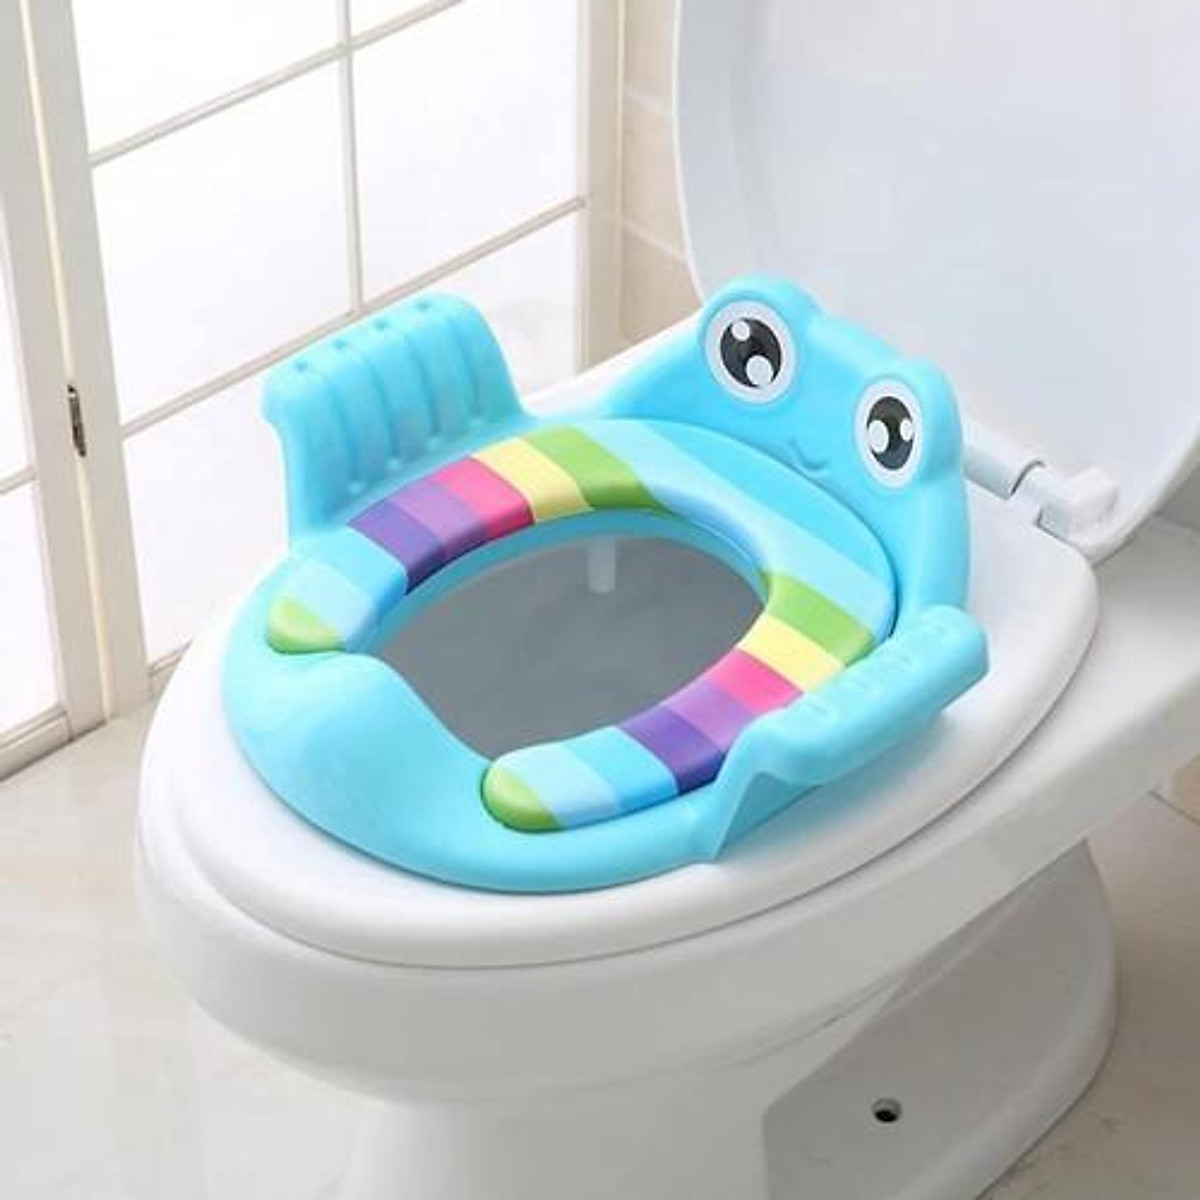 Bệ lót thu nhỏ bồn cầu hình ếch có tay vịn cho bé,bệ toilet,đệm lót bồn cầu vệ sinh cho bé